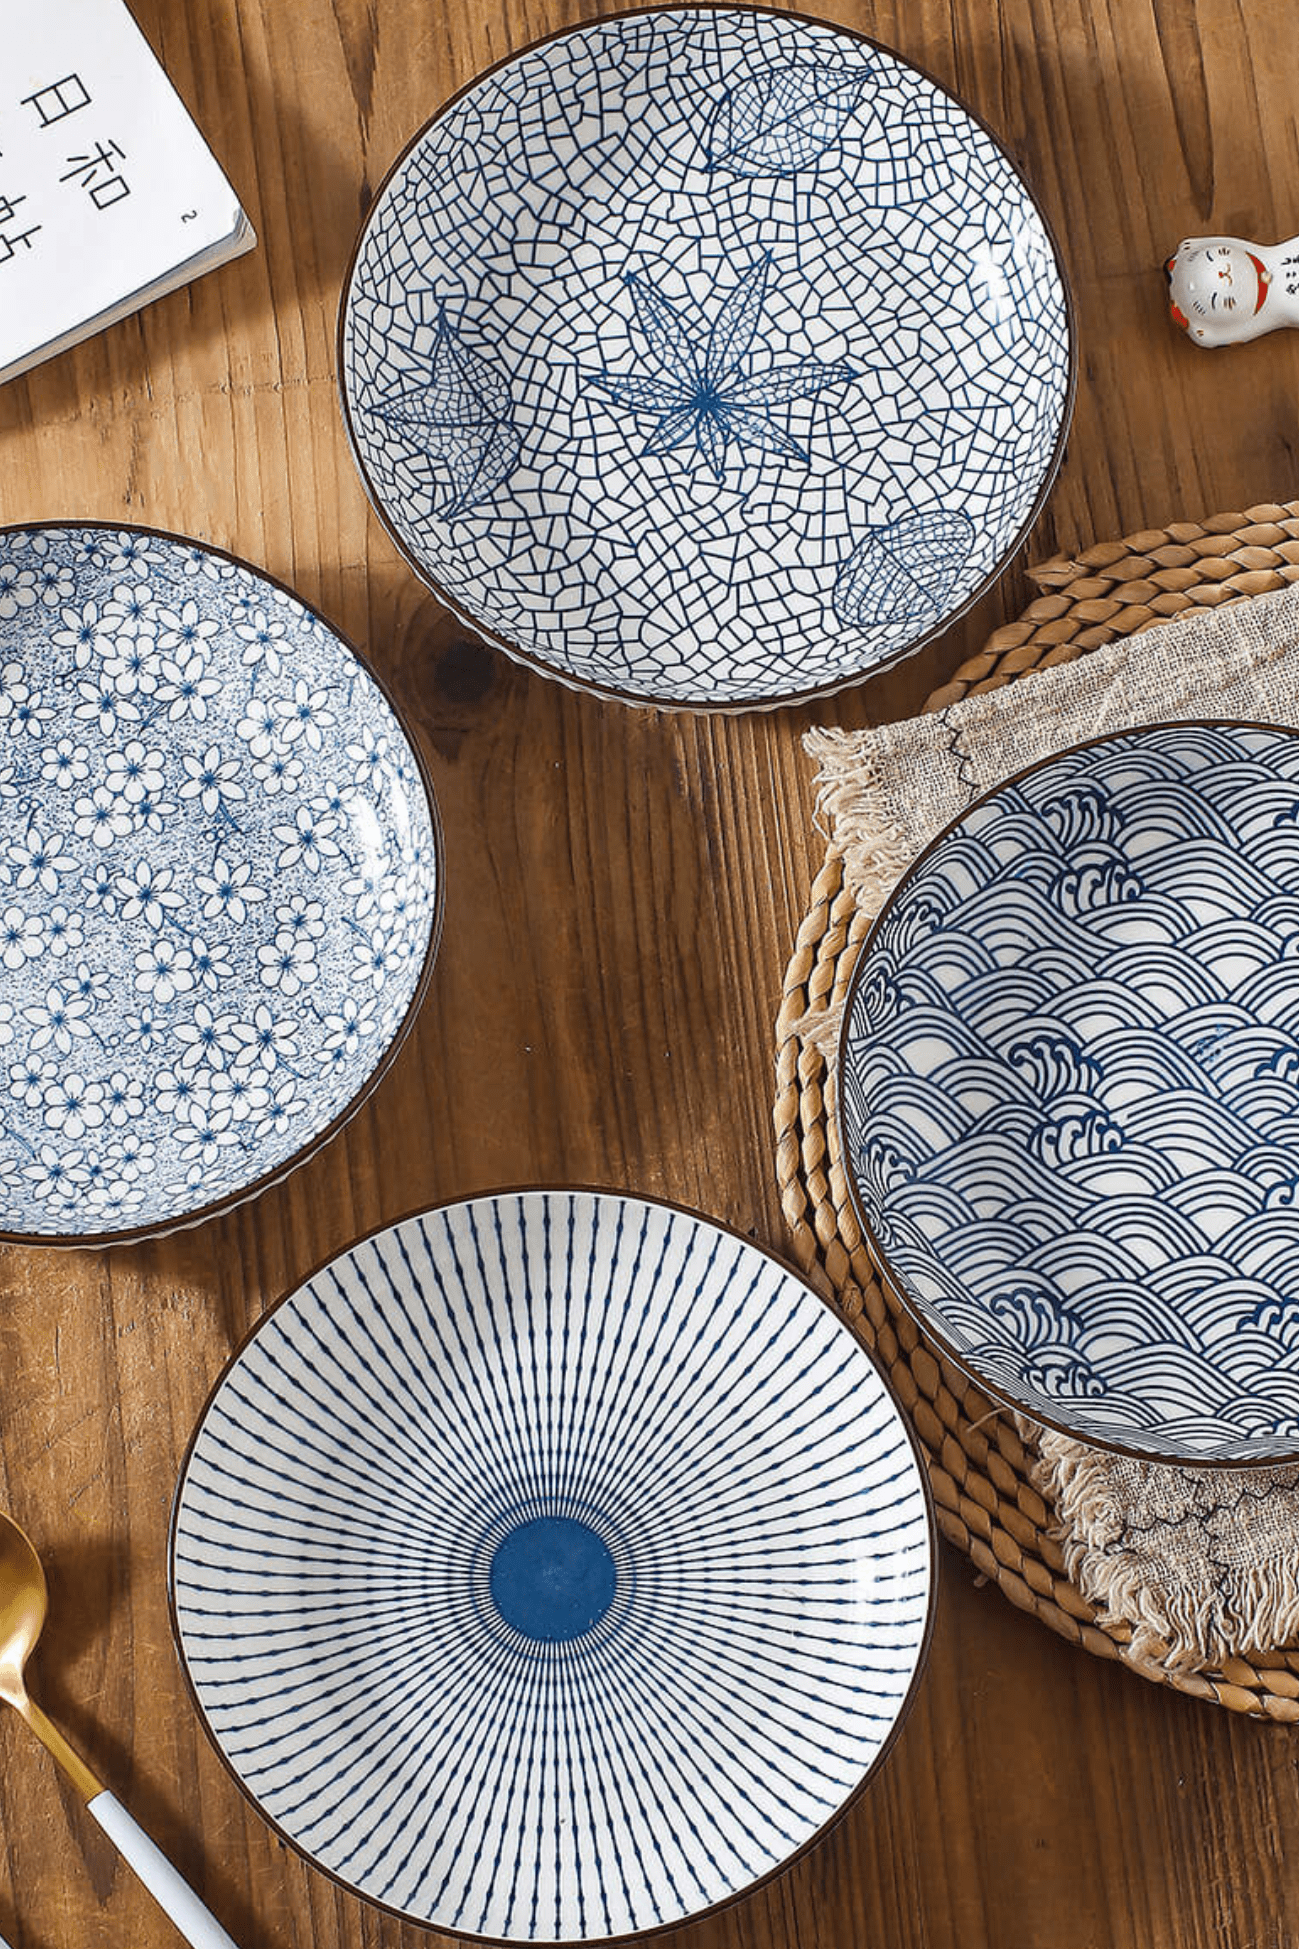 Antiope Design Kishi Sun - Piatto fondo in porcellana in stile orientale